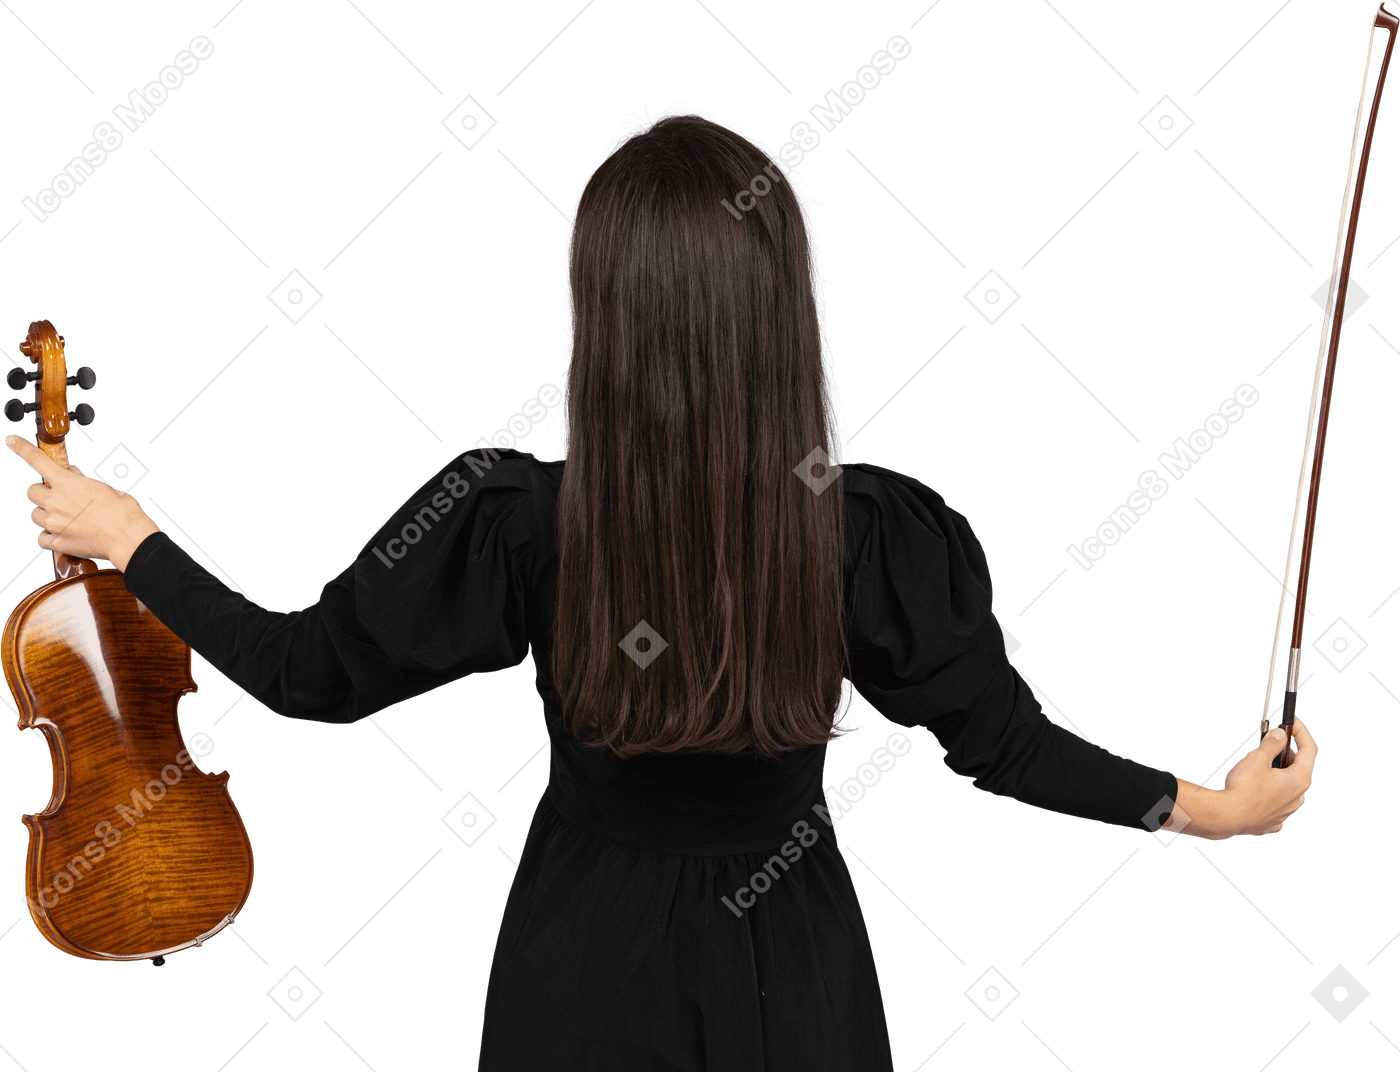 両手を広げて黒いドレスを着た女性のバイオリン奏者の後ろ姿